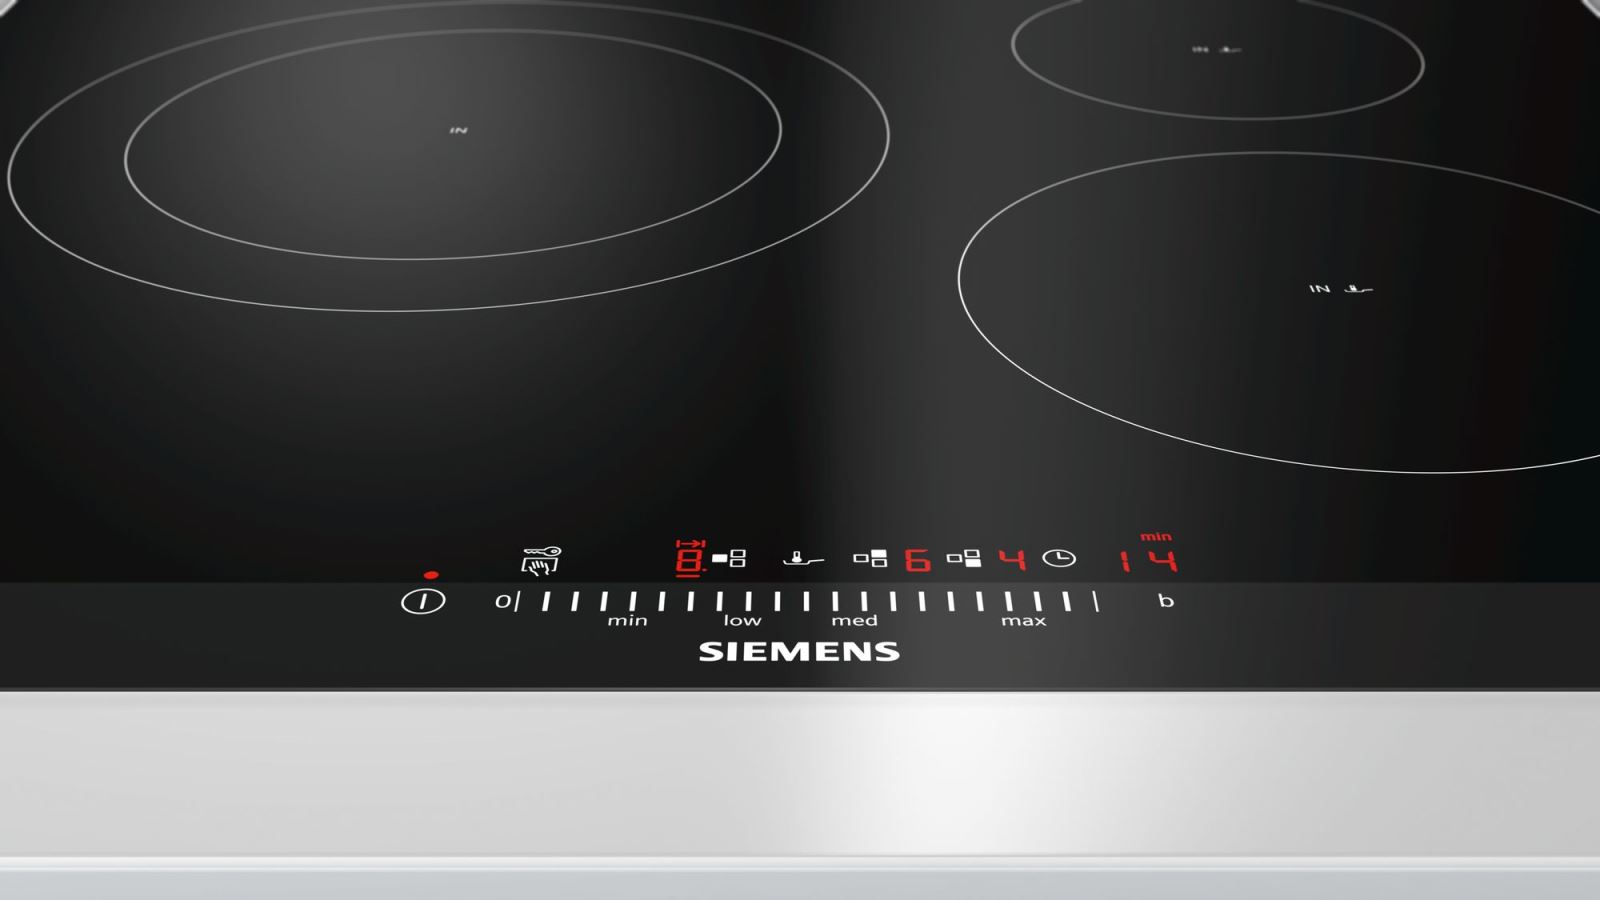 Bếp Từ Siemens EH675FJC1E, Bếp Từ Siemens EH651FDC1E, Bếp Từ Siemens EH651BJB1E, Bếp Từ Siemens EU631BJB2E, bếp từ siemens eh651fjb1e, bếp từ siemens có tốt không, bếp từ siemens 2 bếp, đánh giá bếp từ siemens, bếp từ siemens eu631bjb2e, bếp từ siemens eh651fjb2e, bếp từ siemens 5 bếp